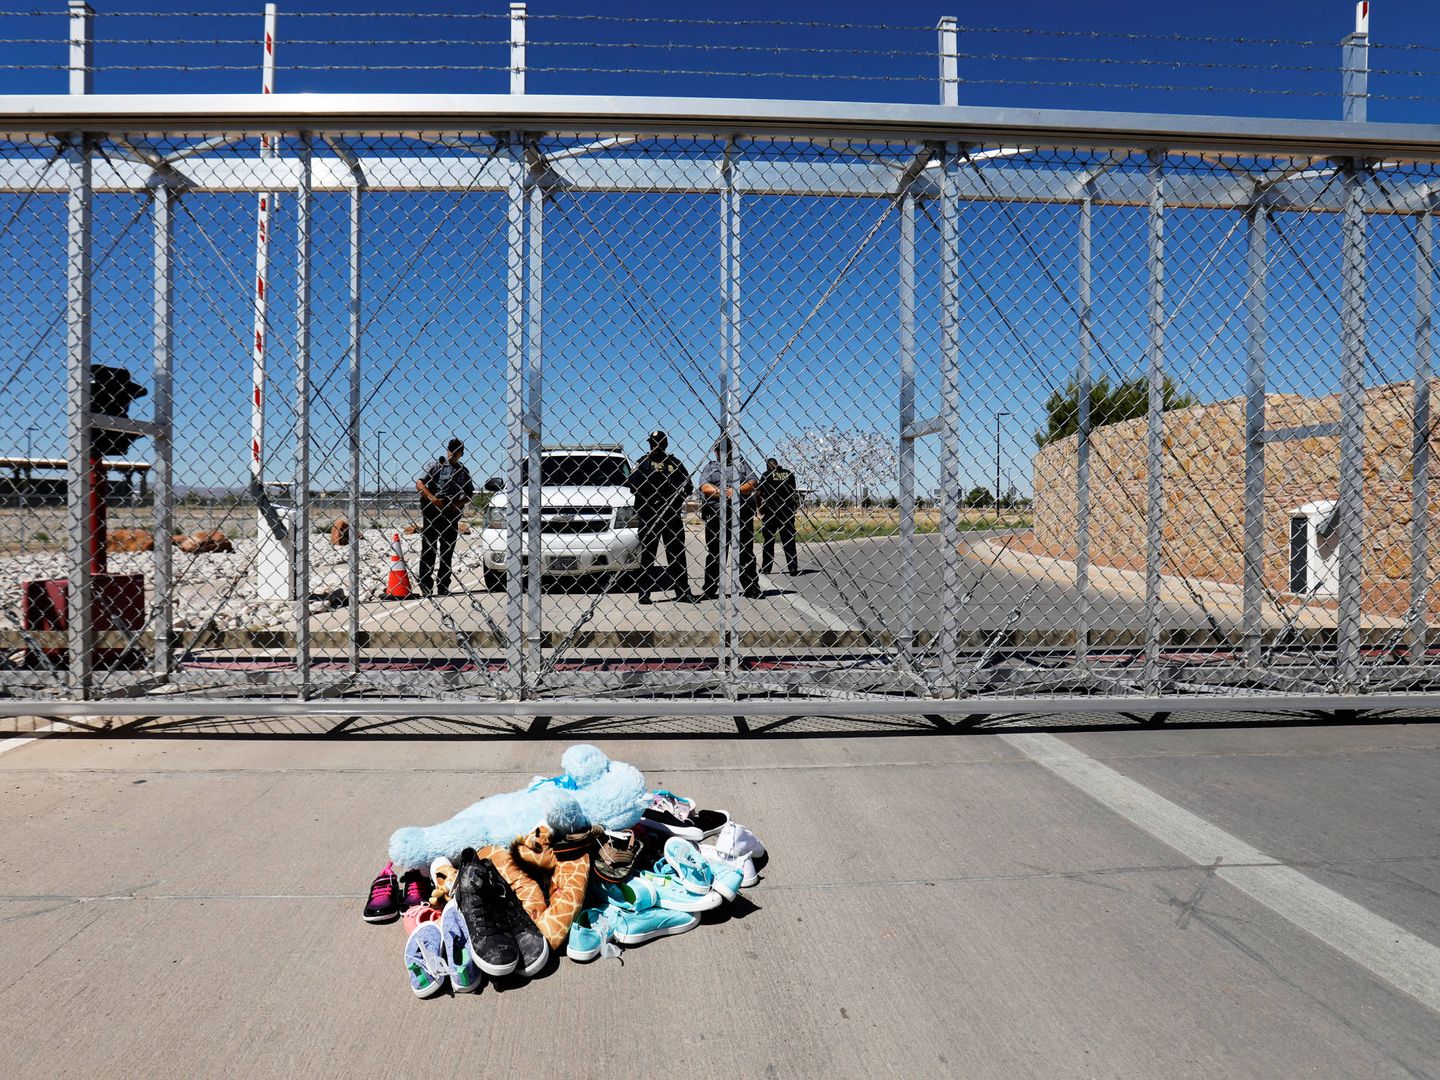 Zapatos y juguetes de niño colocados a modo de protesta frente a la puerta de un centro de detención de menores inmigrantes en Tornillo, Texas, el 21 de junio de 2018. (Reuters)